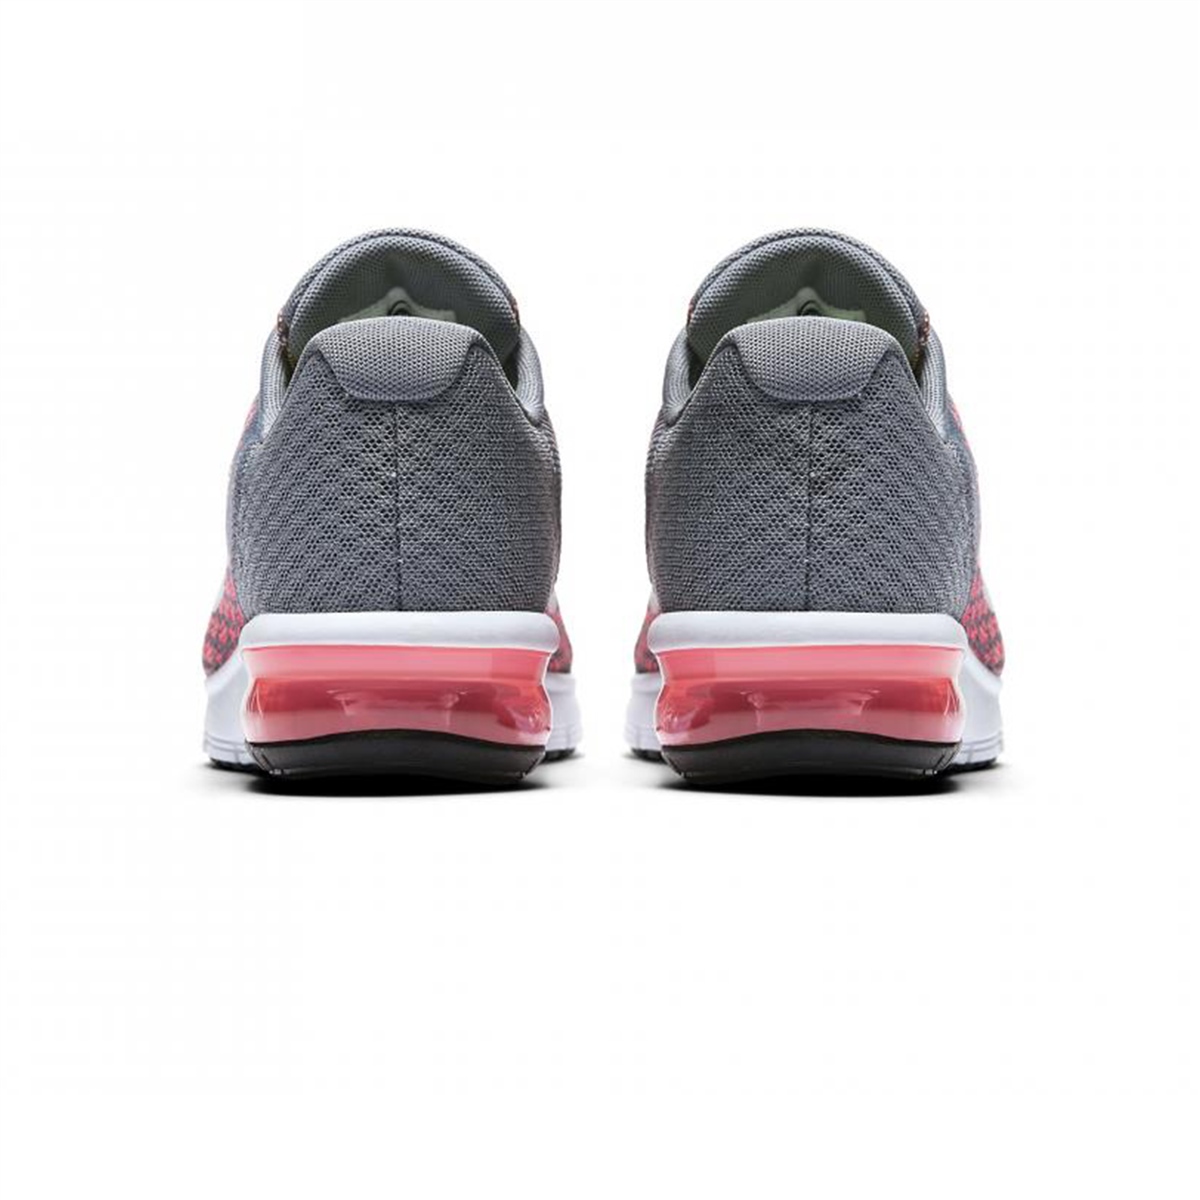 Nike Air Max Sequent 2 Bayan Spor Ayakkabı Ürün kodu: 852465-003 | Etichet  Sport